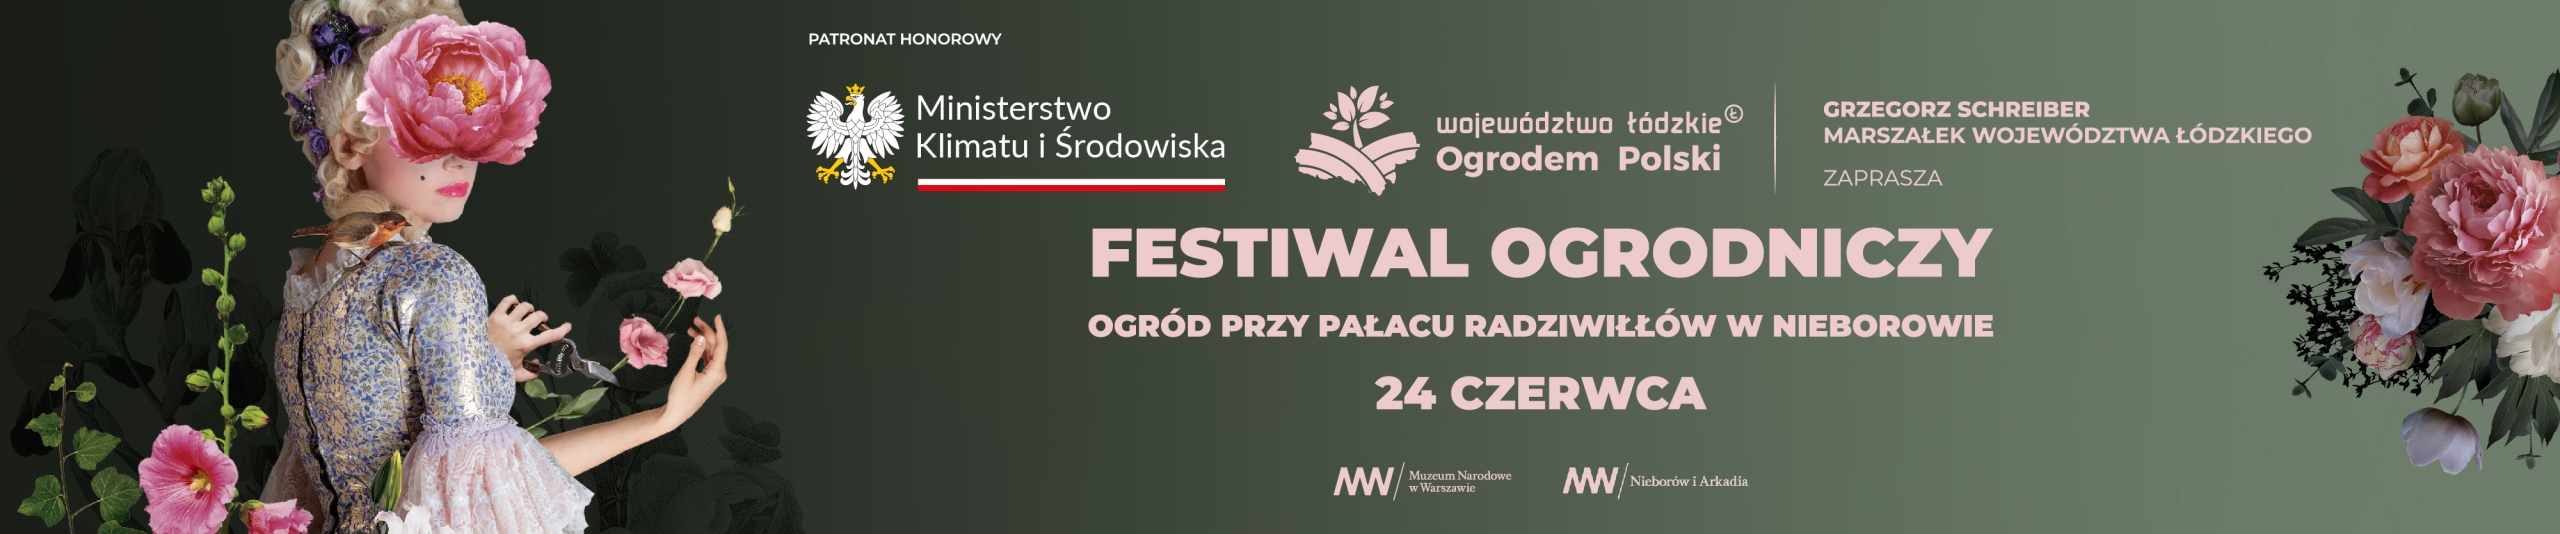 Festiwal Ogrodniczy Województwo Łódzkie Ogrodem Polski